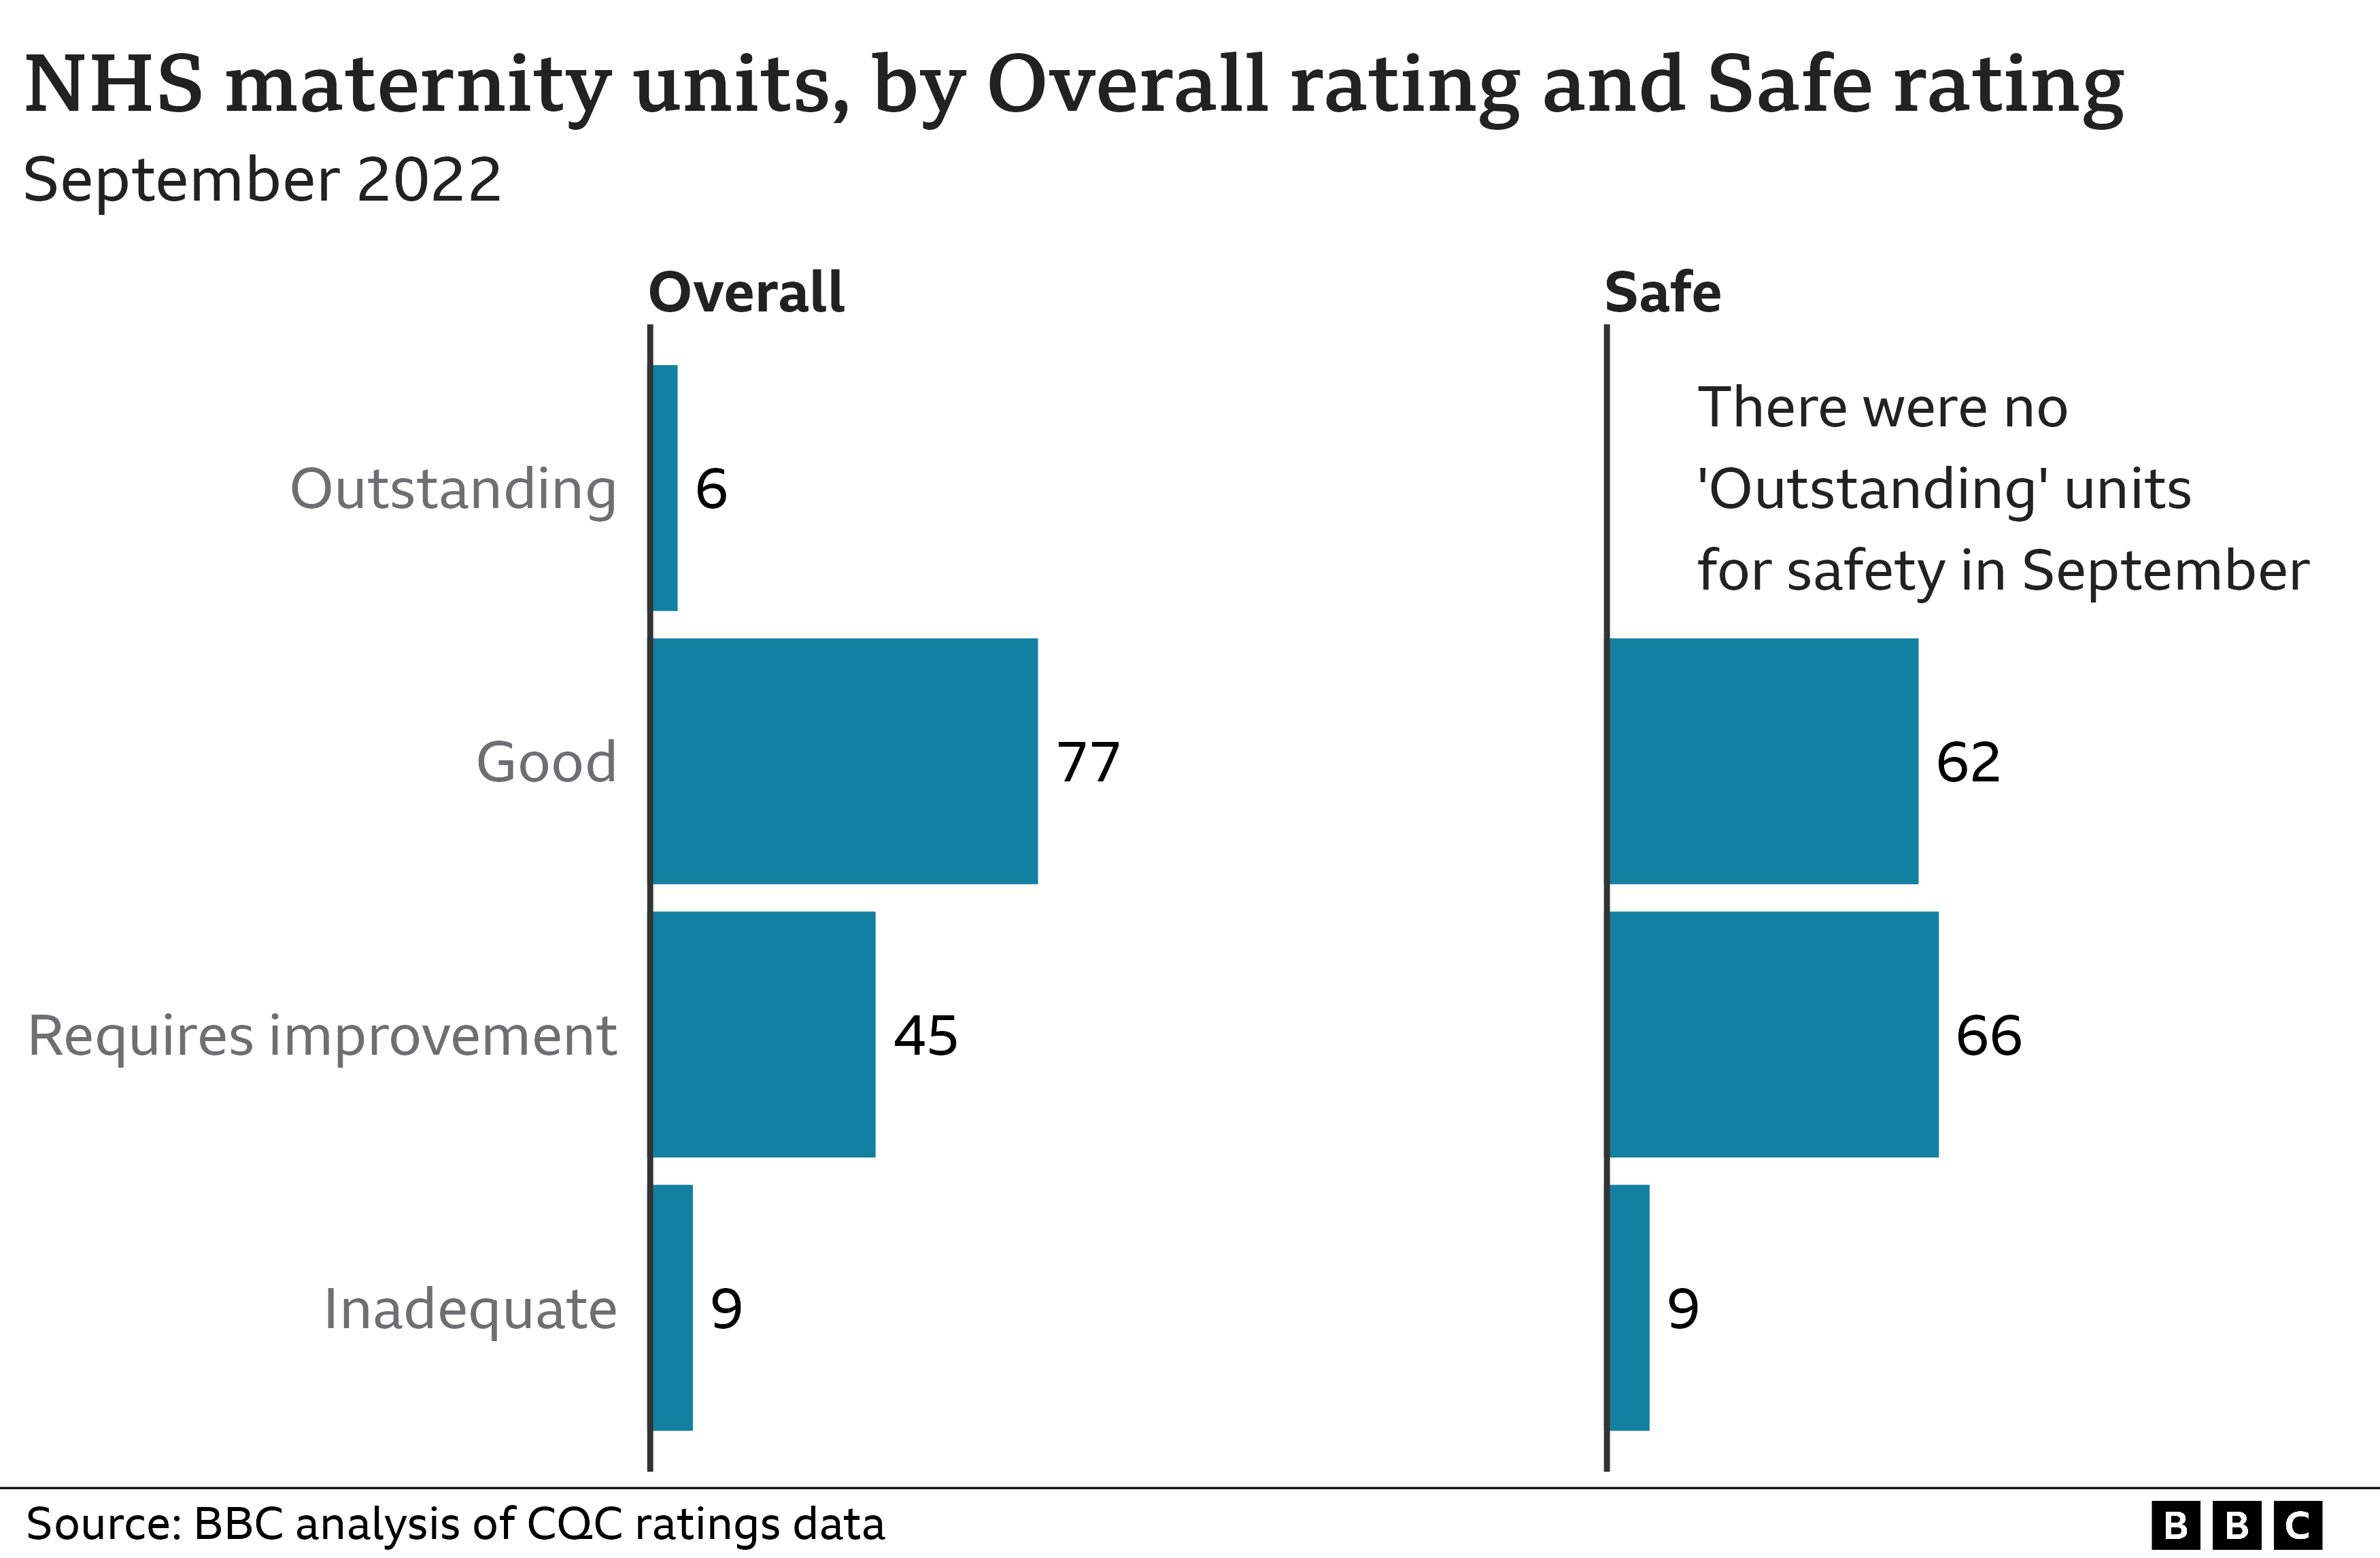 Диаграмма, показывающая родильные отделения NHS по общему рейтингу и рейтингу безопасности